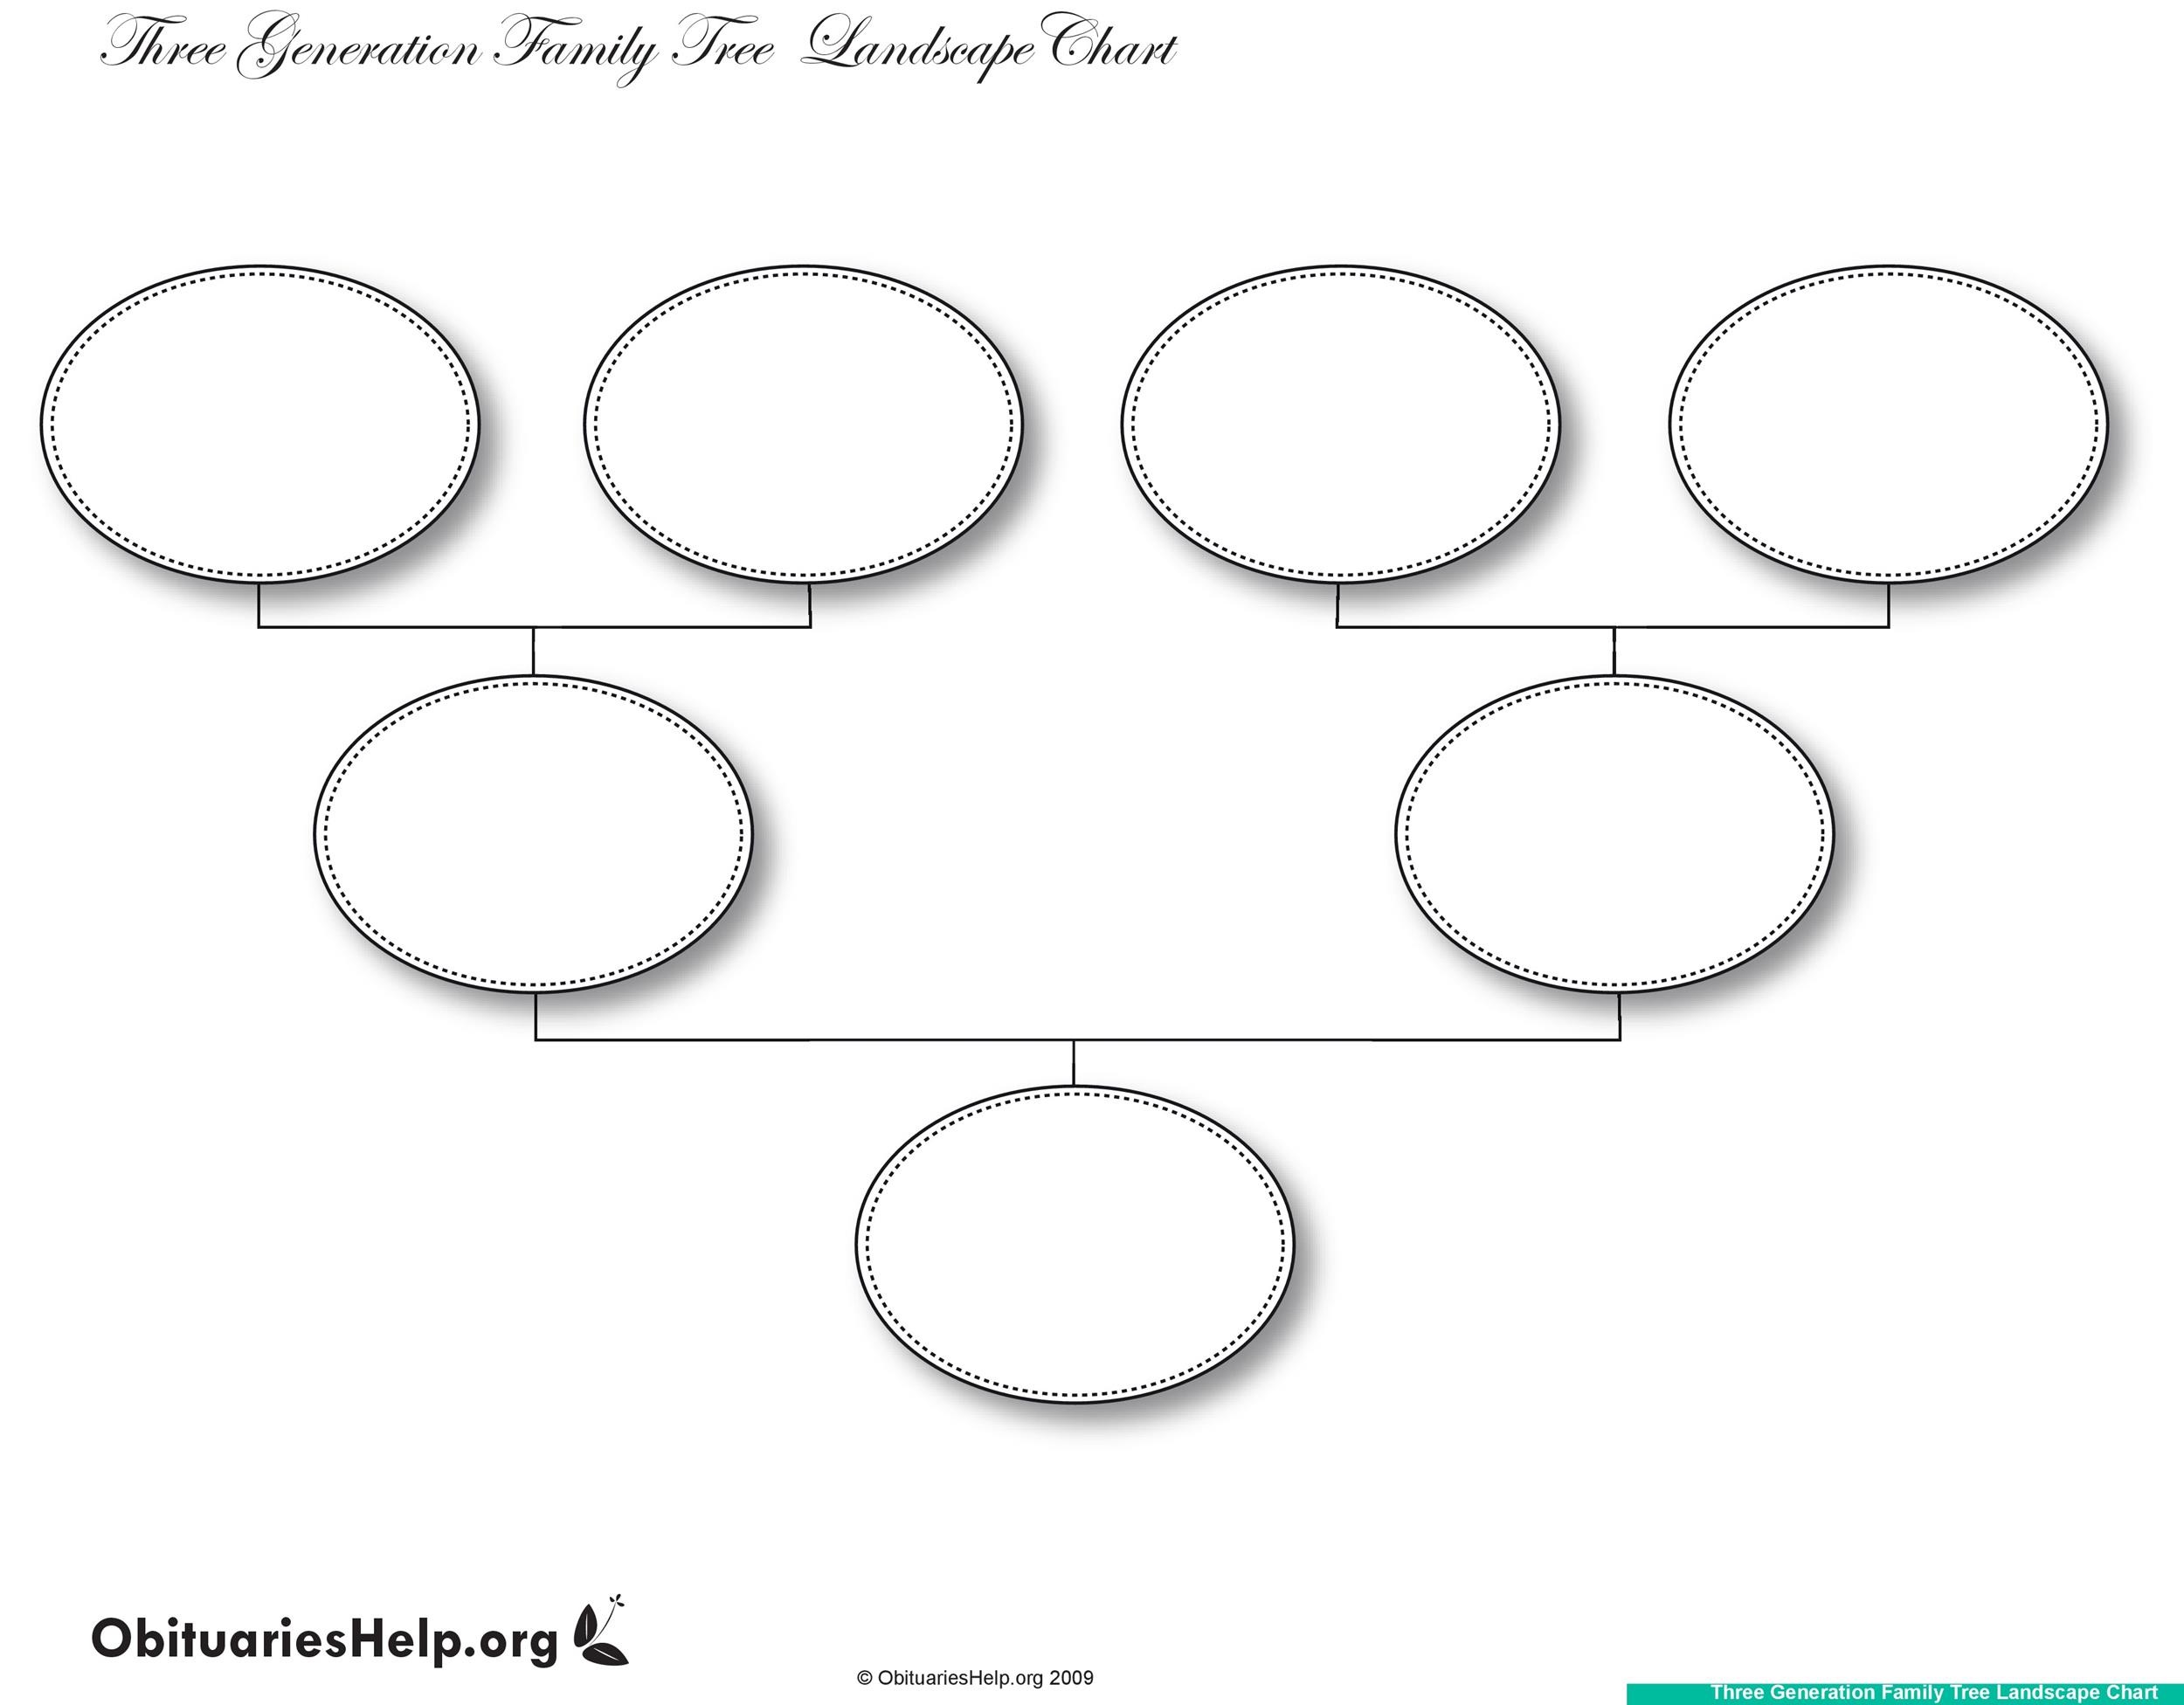 Basic Family Tree Chart